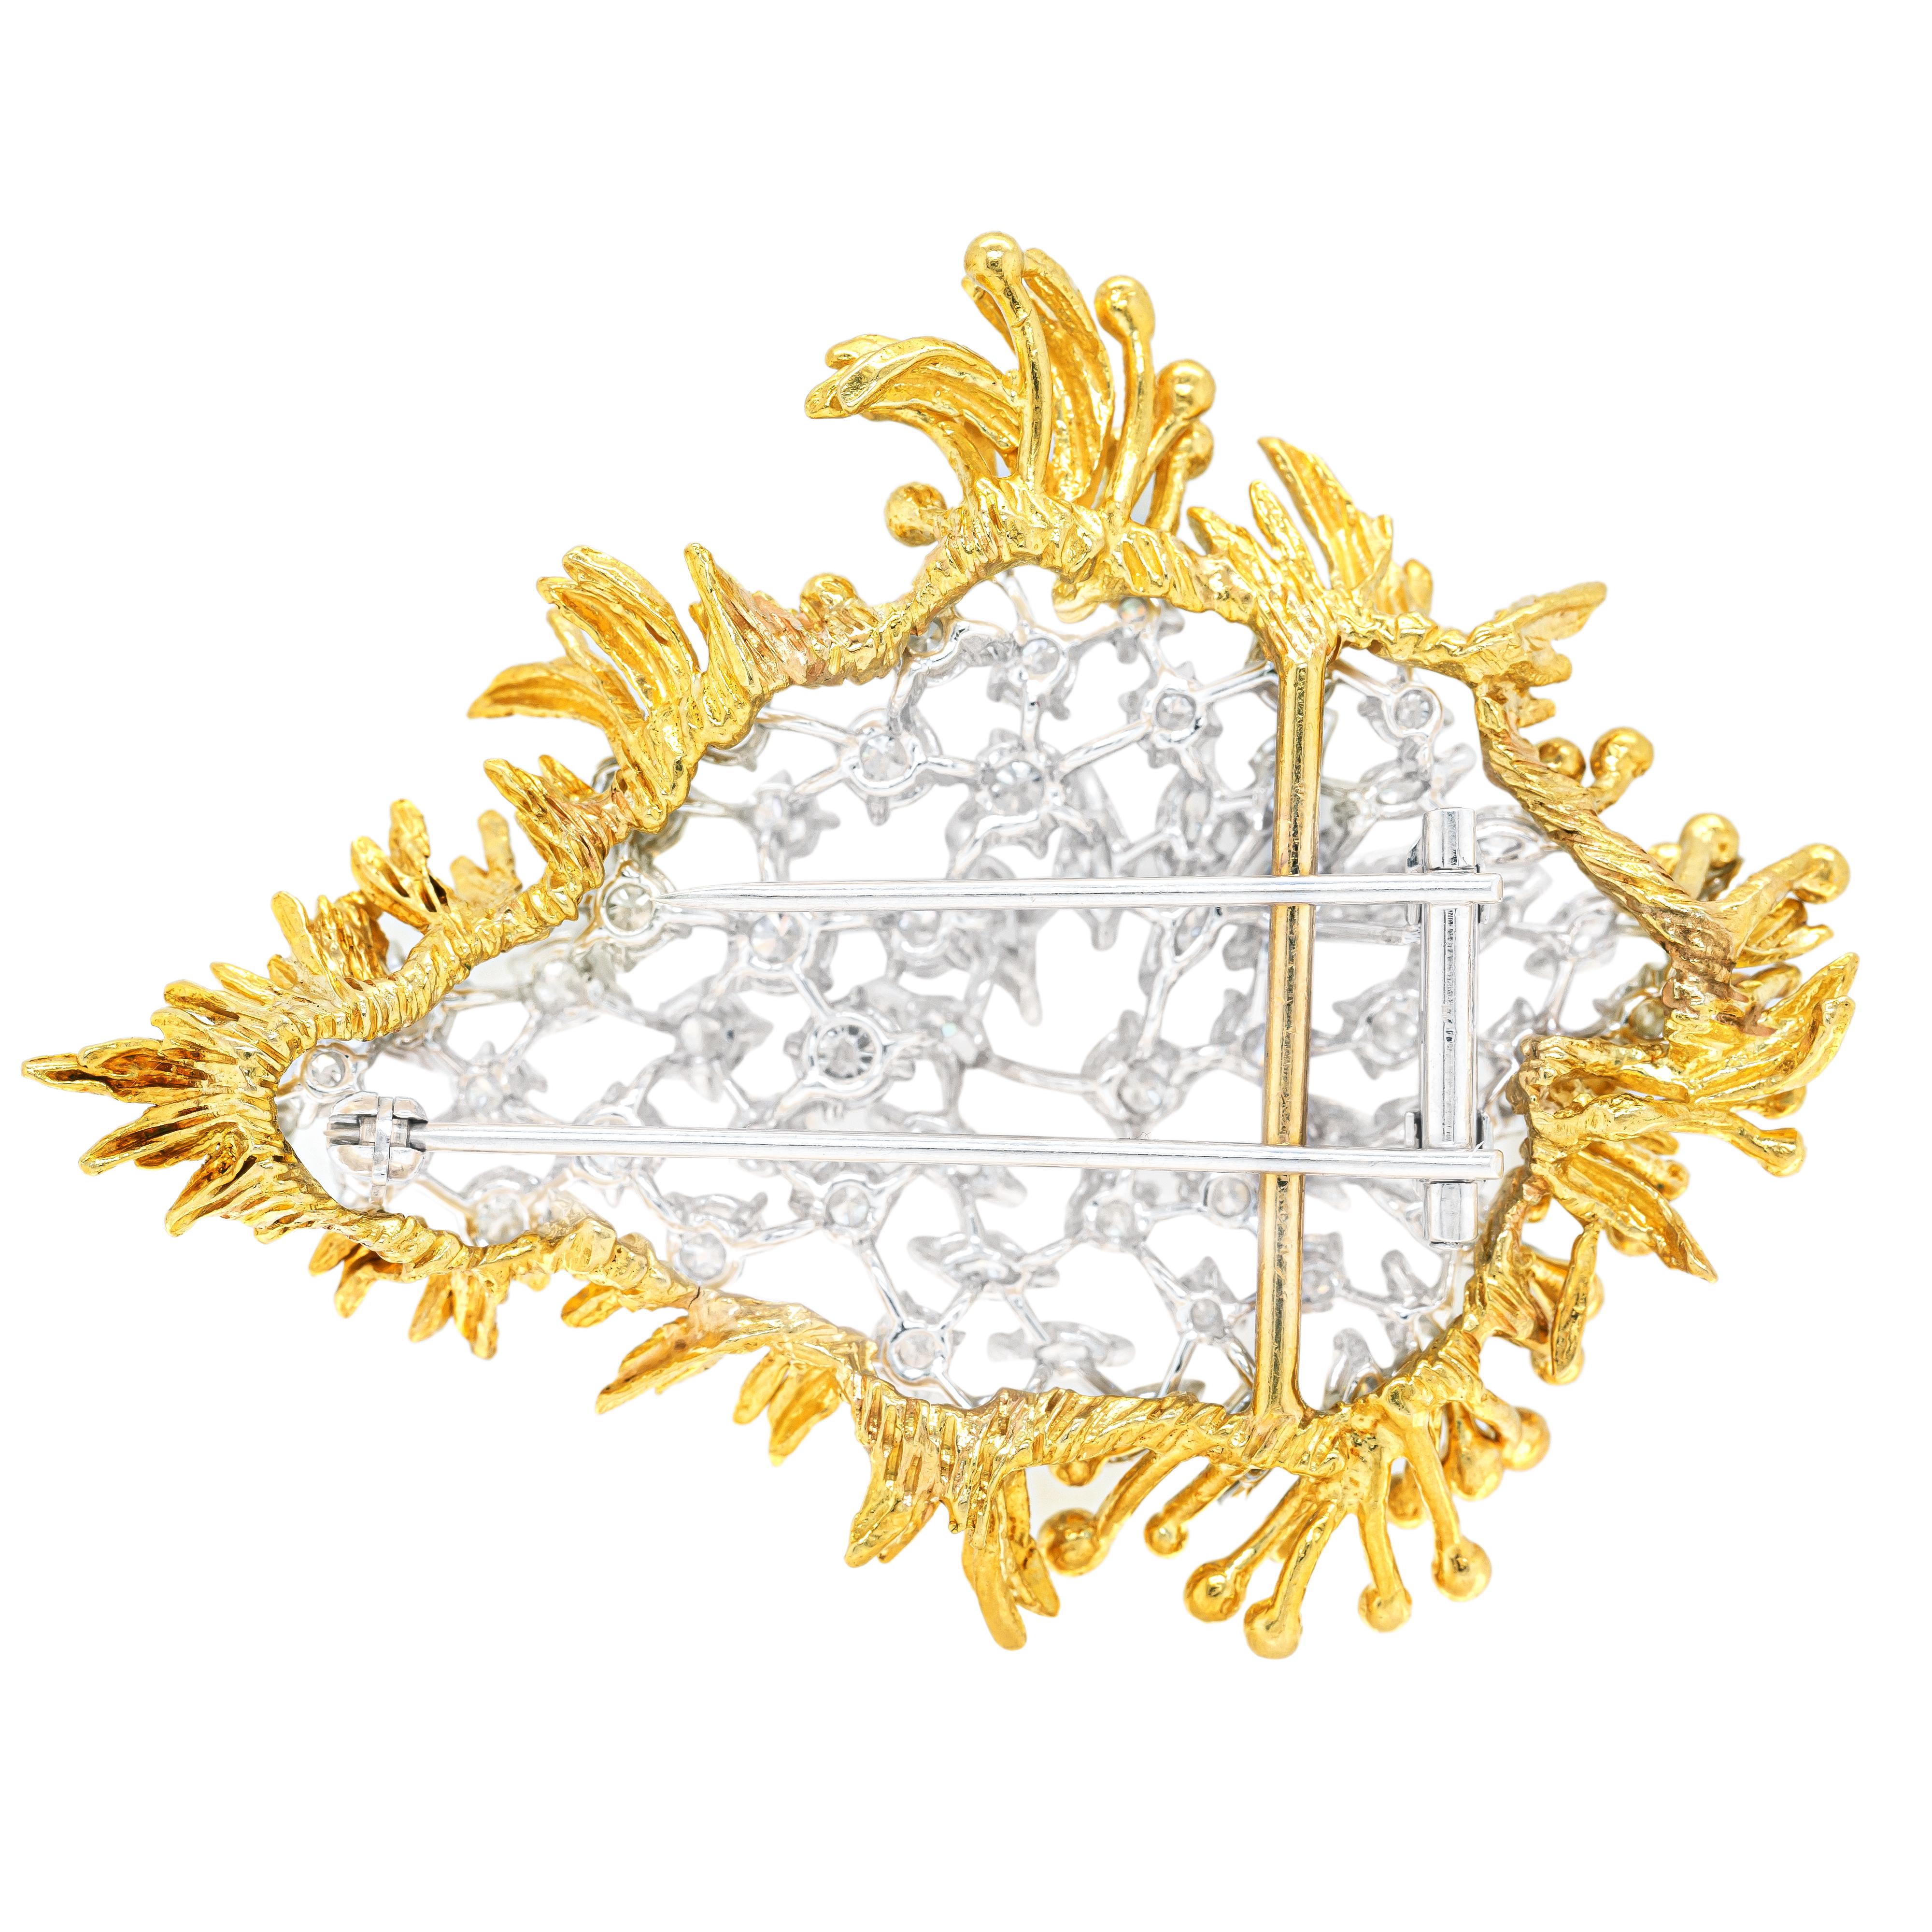 Diese prächtige, einzigartige, abnehmbare Brosche ist mit einer Mischung aus 22 marquiseförmigen Diamanten und 40 runden Diamanten im Brillantschliff besetzt. Alle Diamanten sind sorgfältig auf einer durchbrochenen Basis aus 18 Karat Weißgold